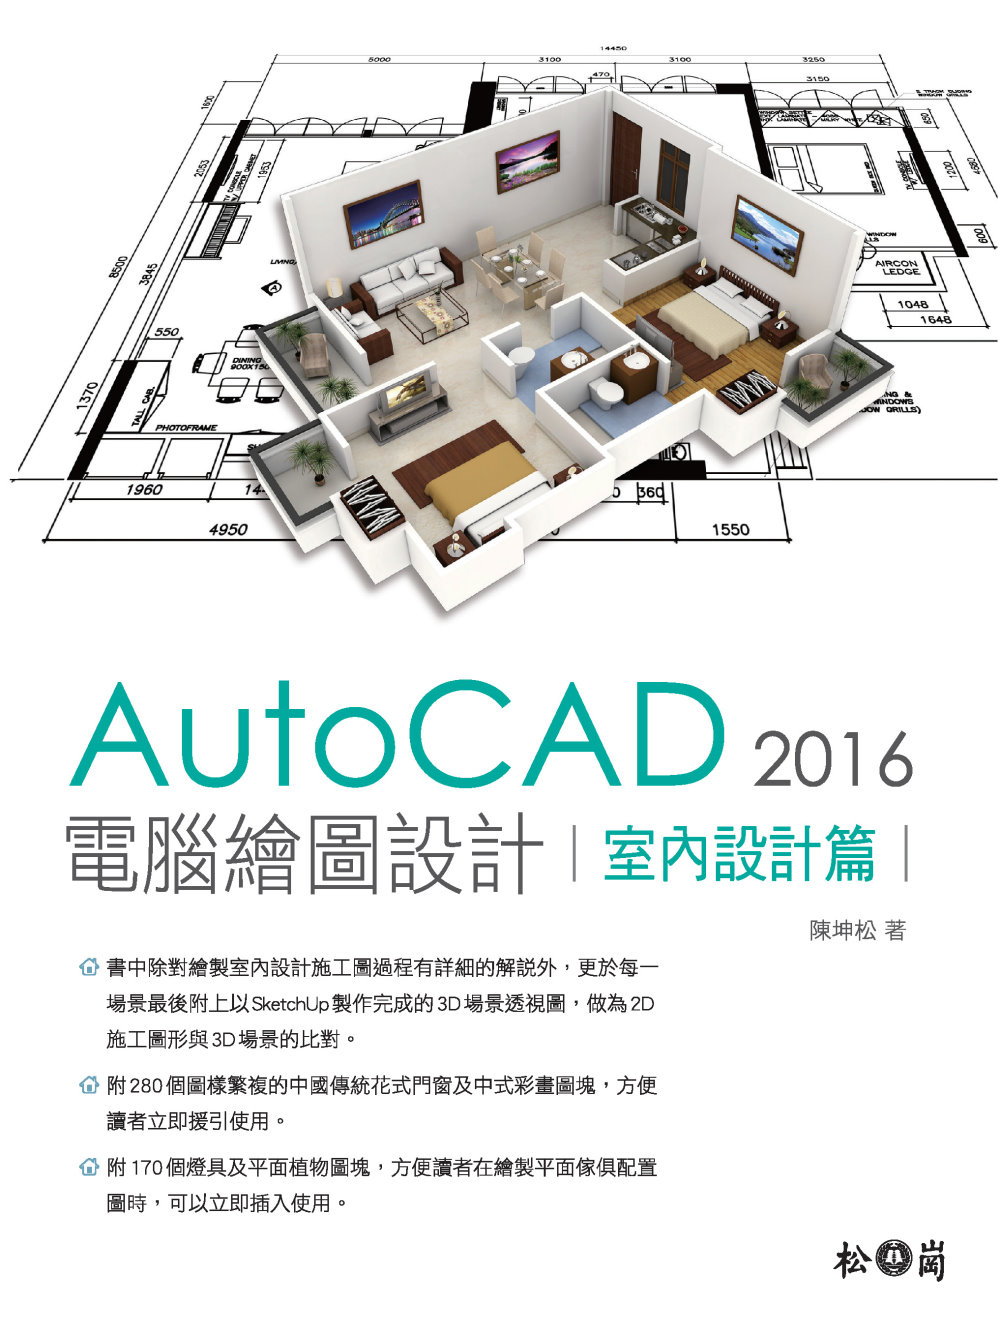 AutoCAD 2016 電腦繪圖設計：室內設計篇<附280個中國傳統花式門窗及中式彩繪圖塊、170個燈具及平面植物圖塊>